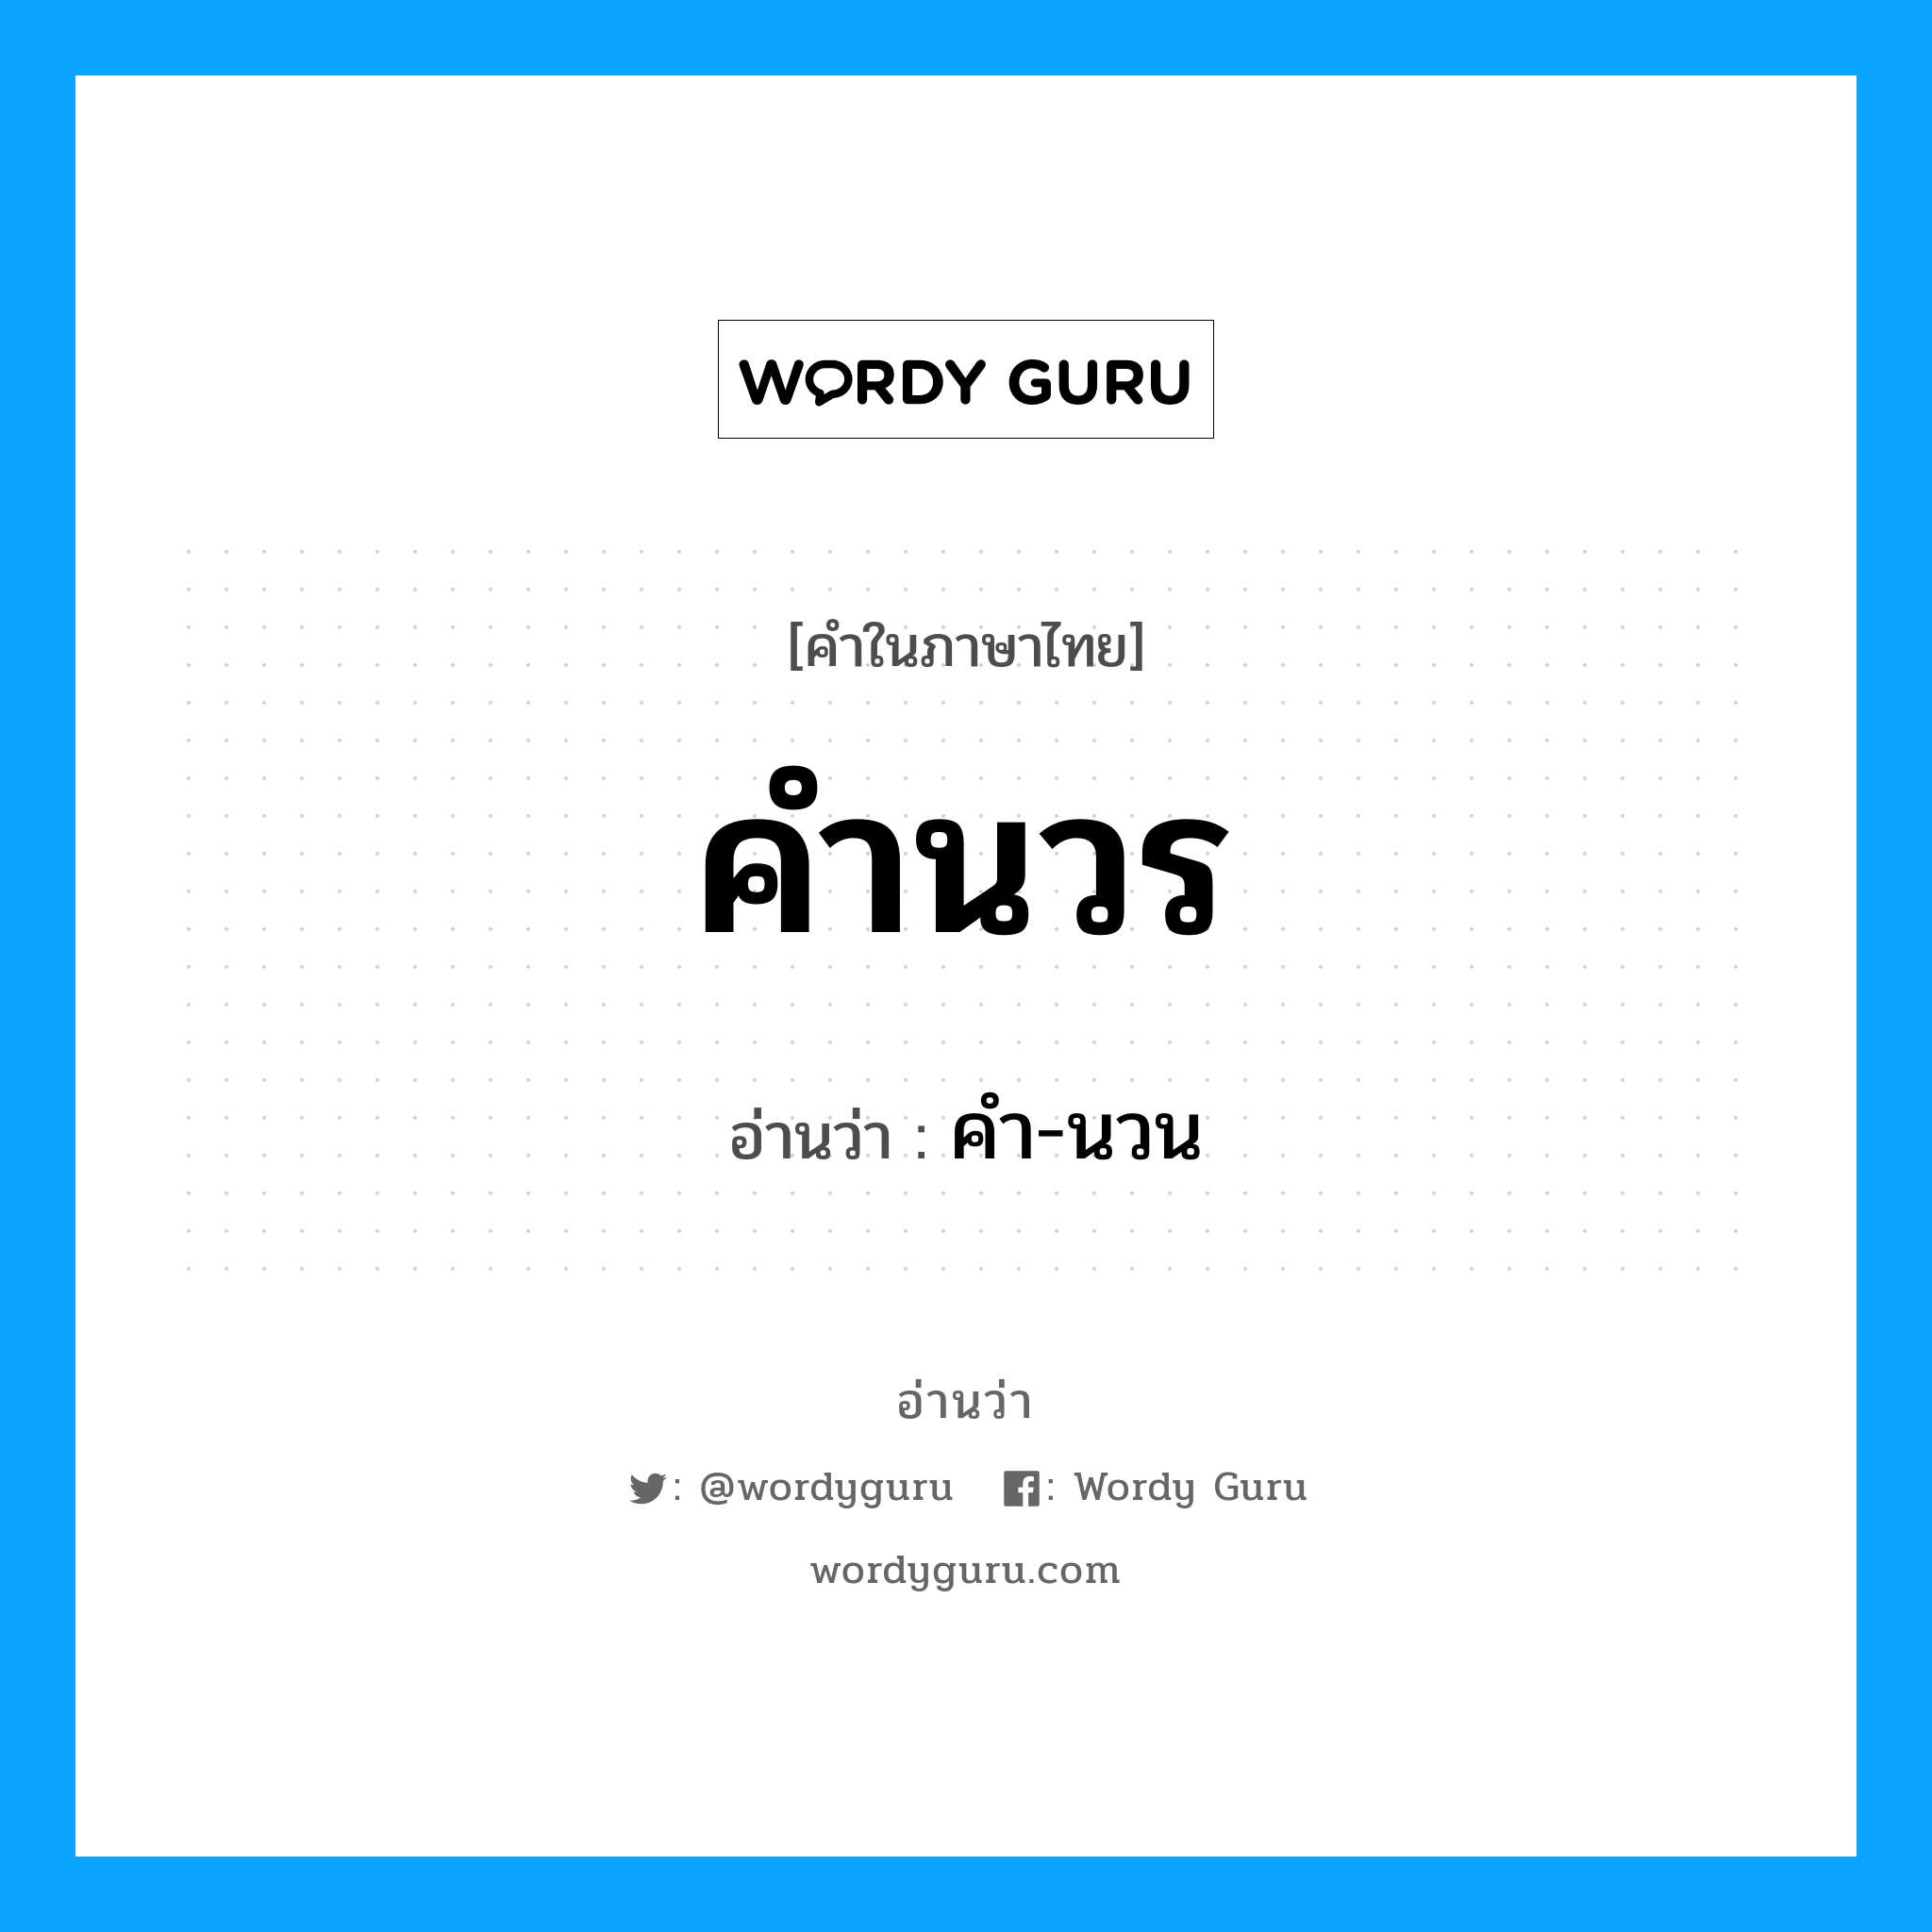 คำ-นวน เป็นคำอ่านของคำไหน?, คำในภาษาไทย คำ-นวน อ่านว่า คำนวร